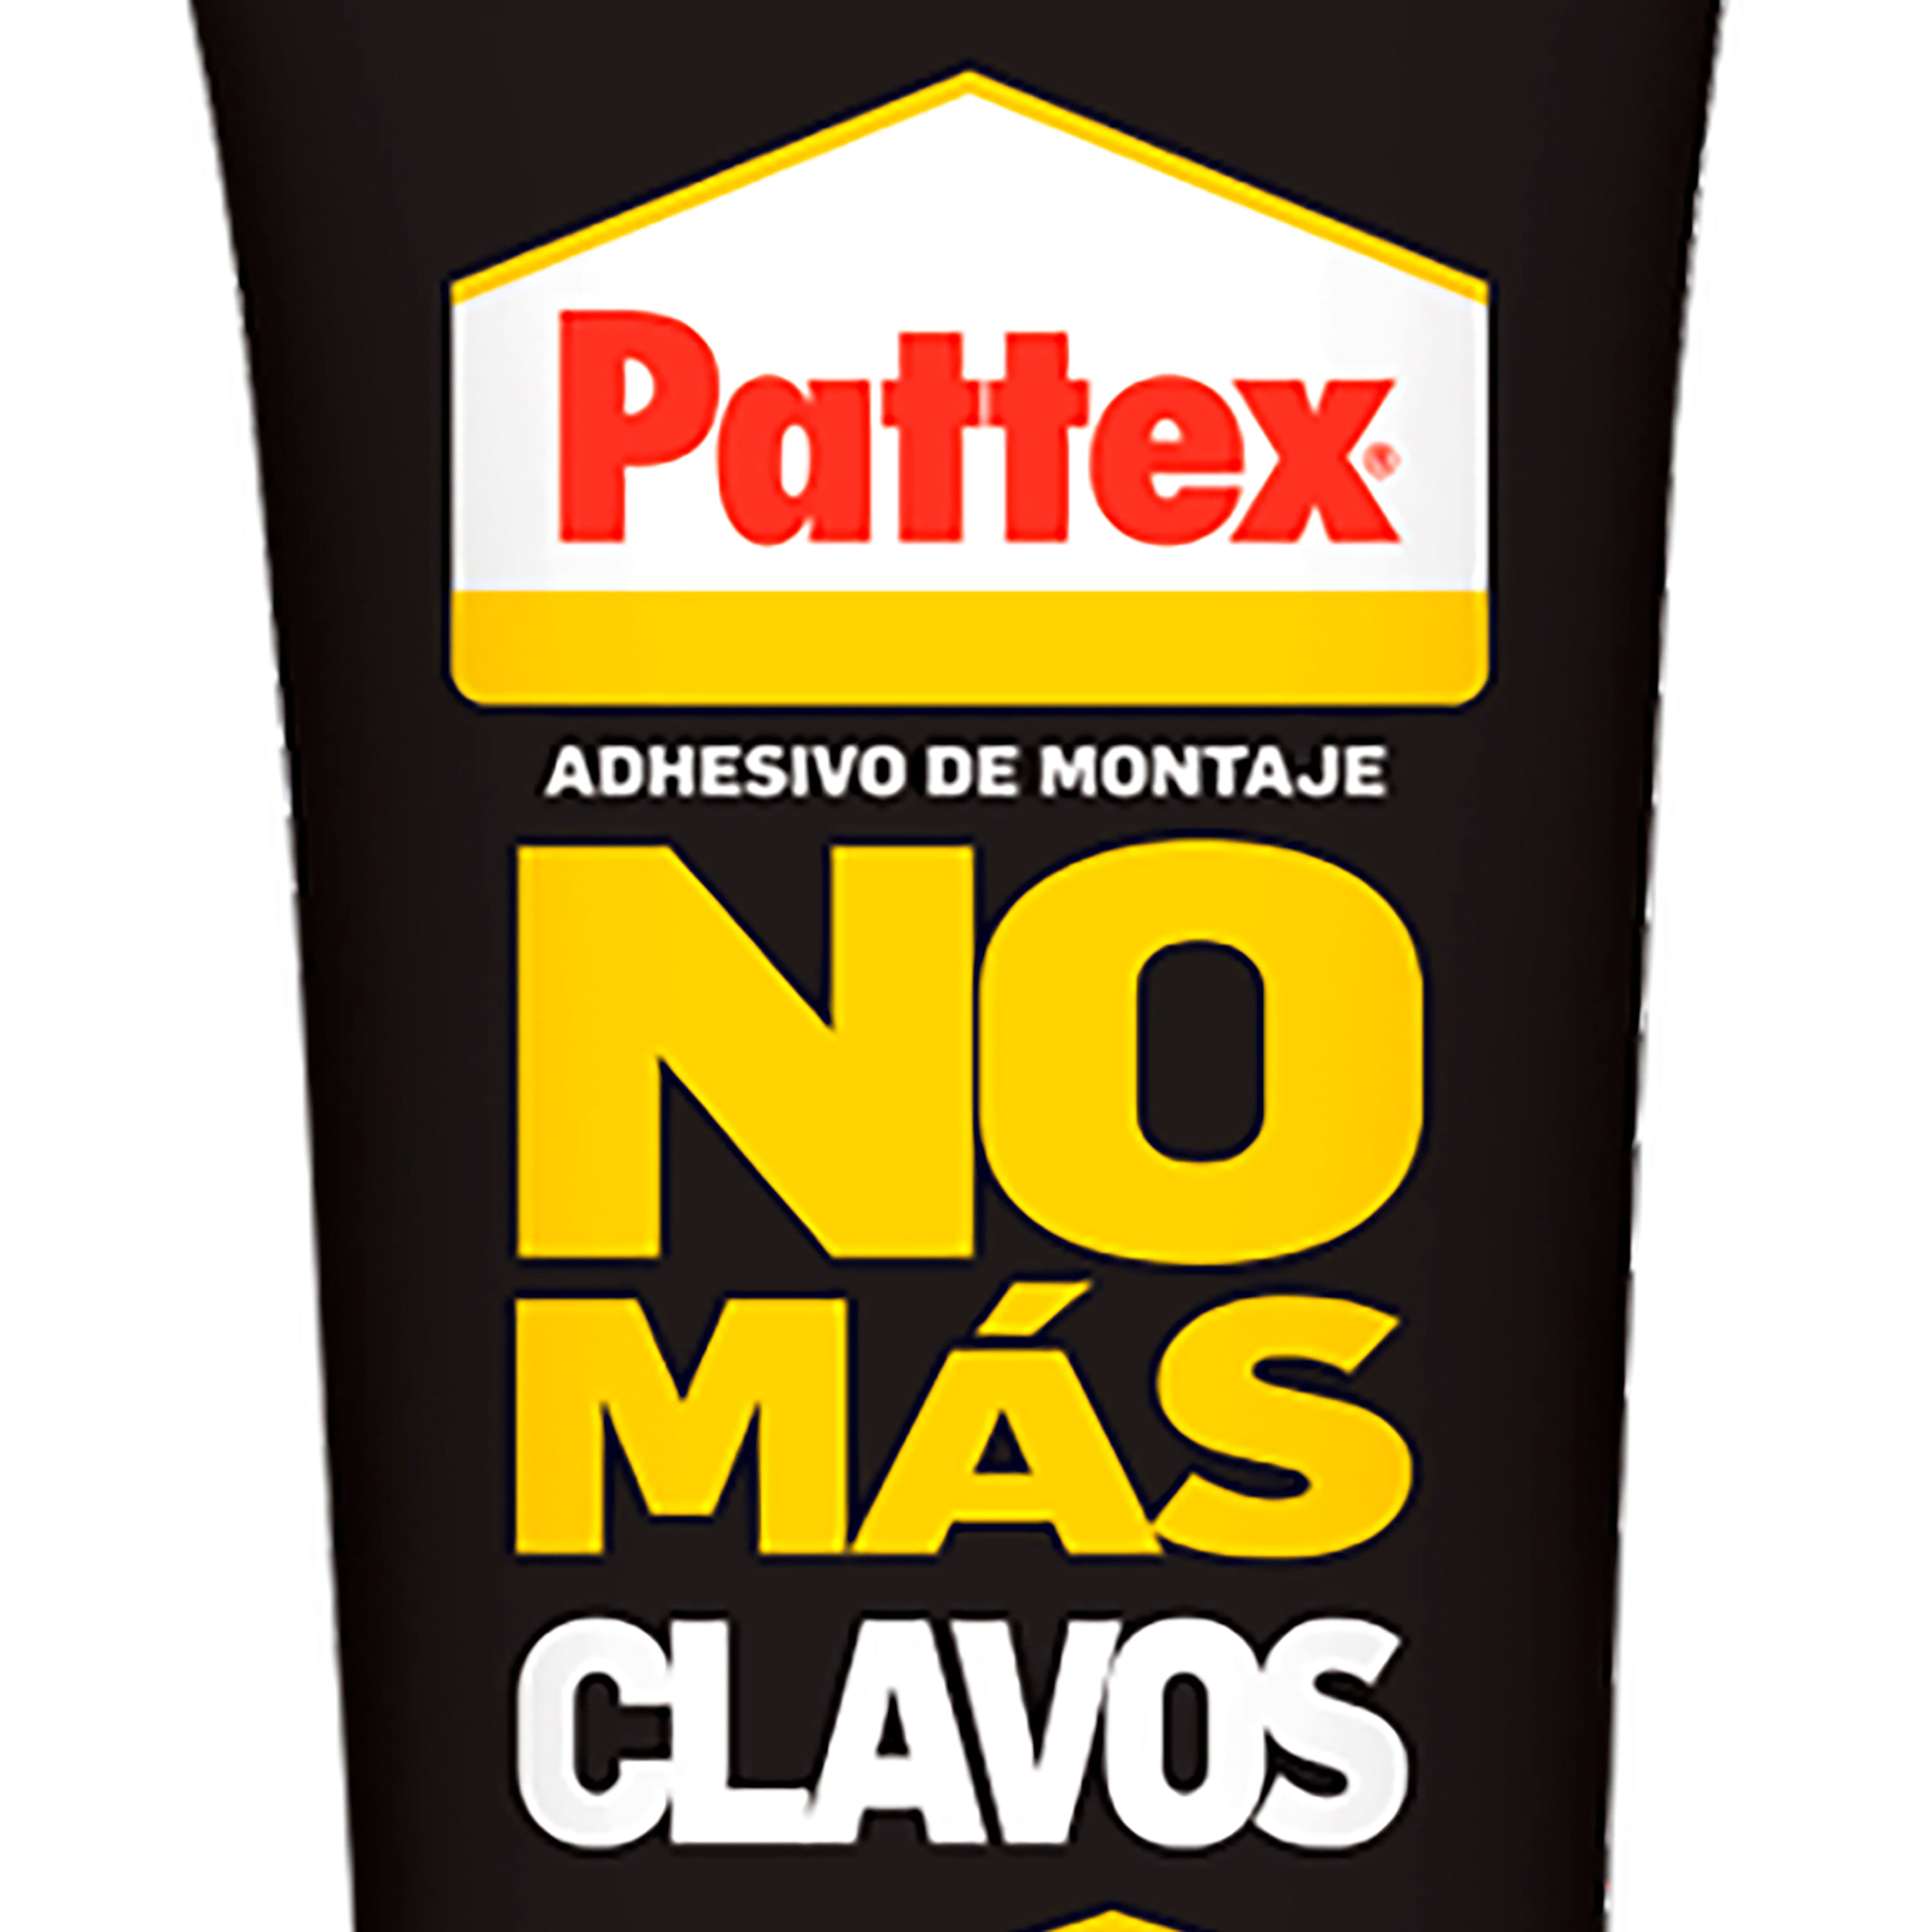 PATTEX ADHESIVO NO MAS CLAVOS 150 GR